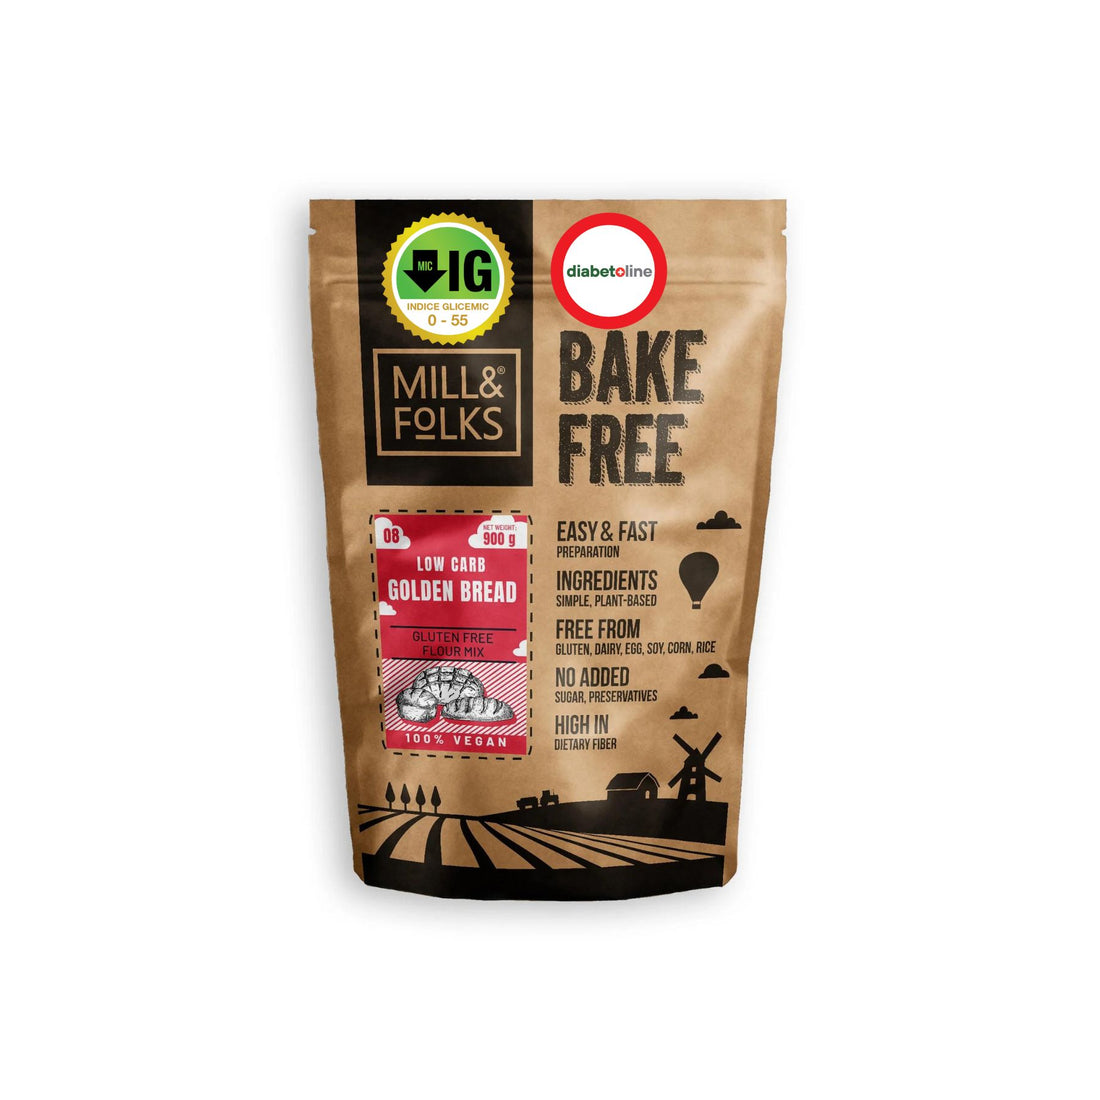 Făină cu INDICE GLICEMIC SCĂZUT - PÂINE AURIE LOW CARB Bake-free / Golden Bread 900 gr